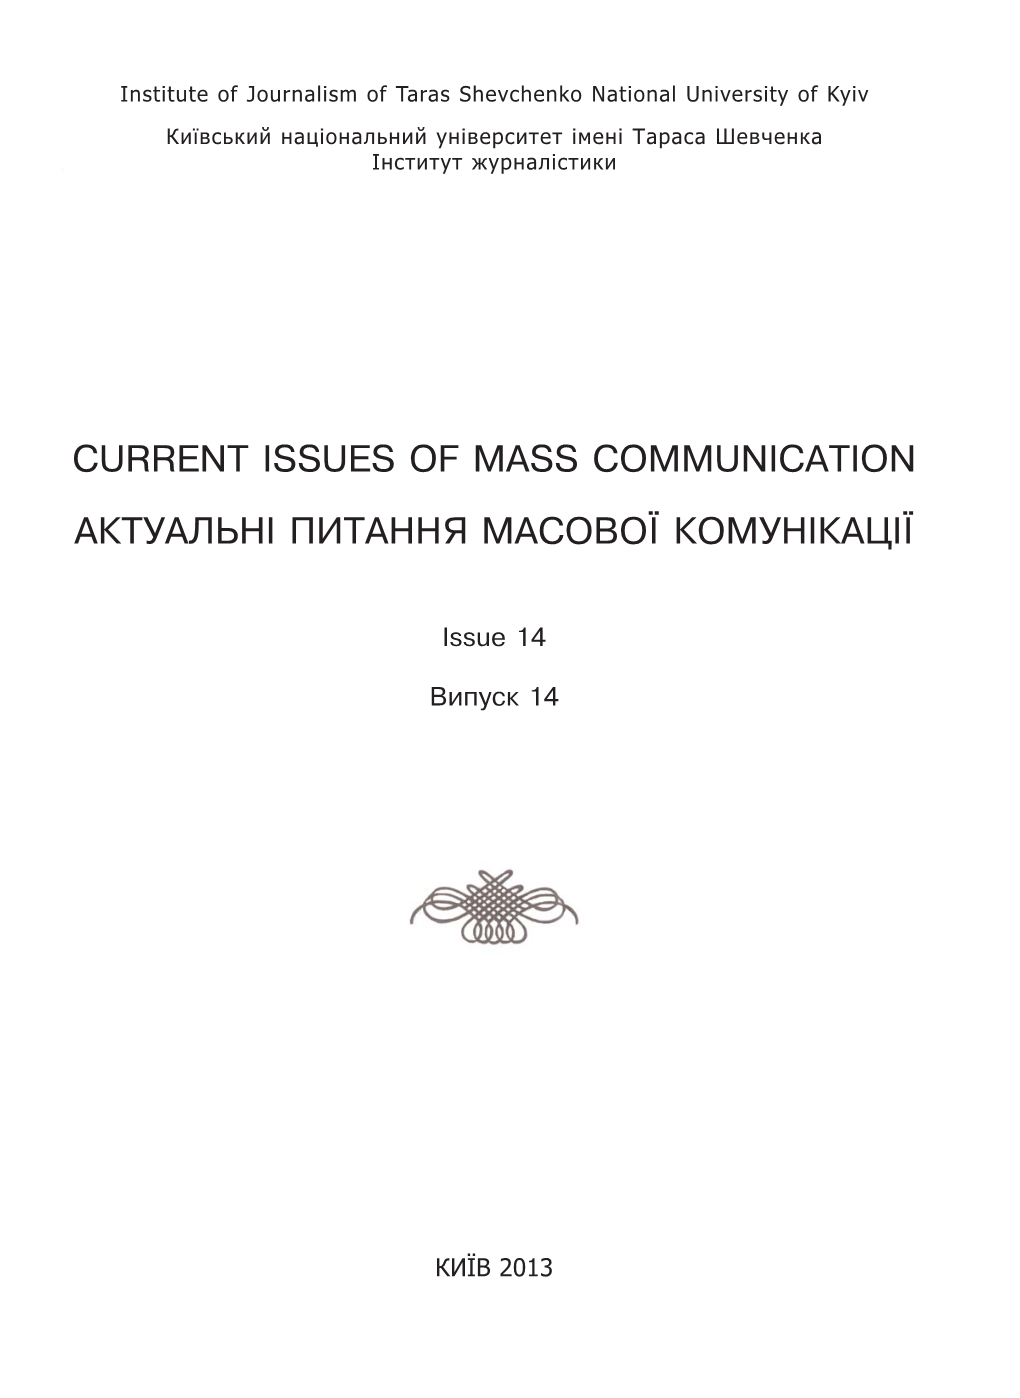 Current Issues of Mass Communication Ак Ту Ал Ьні Пи Та Н Ня Мас О Вої Ко